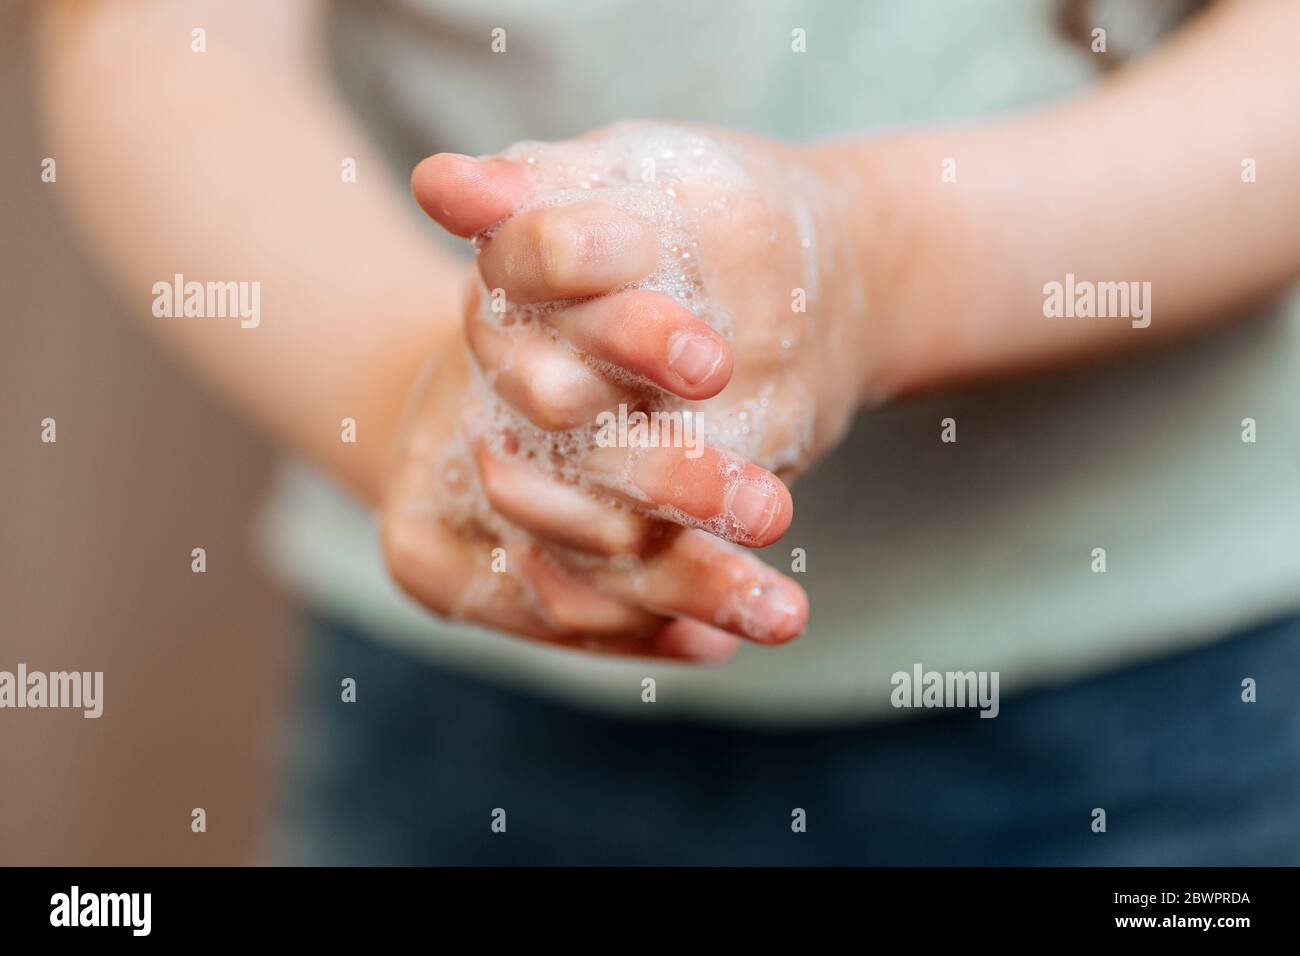 Mains d'enfants dans de la mousse savonneuse. Le concept de lavage des mains, d'hygiène. Banque D'Images